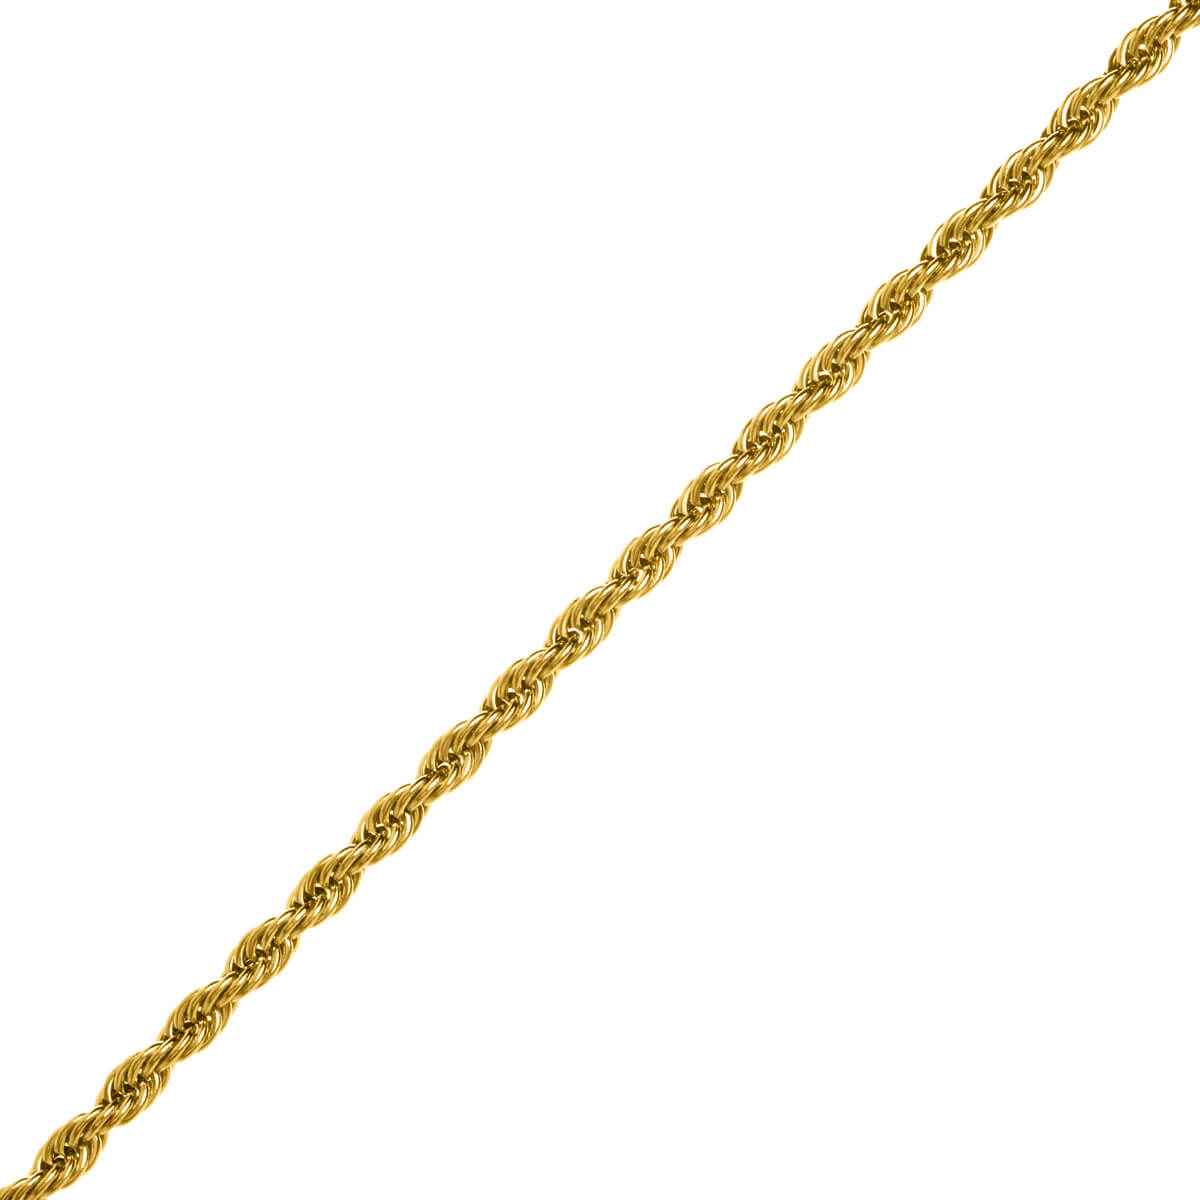 Rope chain steel cordeliaketju necklace 4mm 47cm +5cm